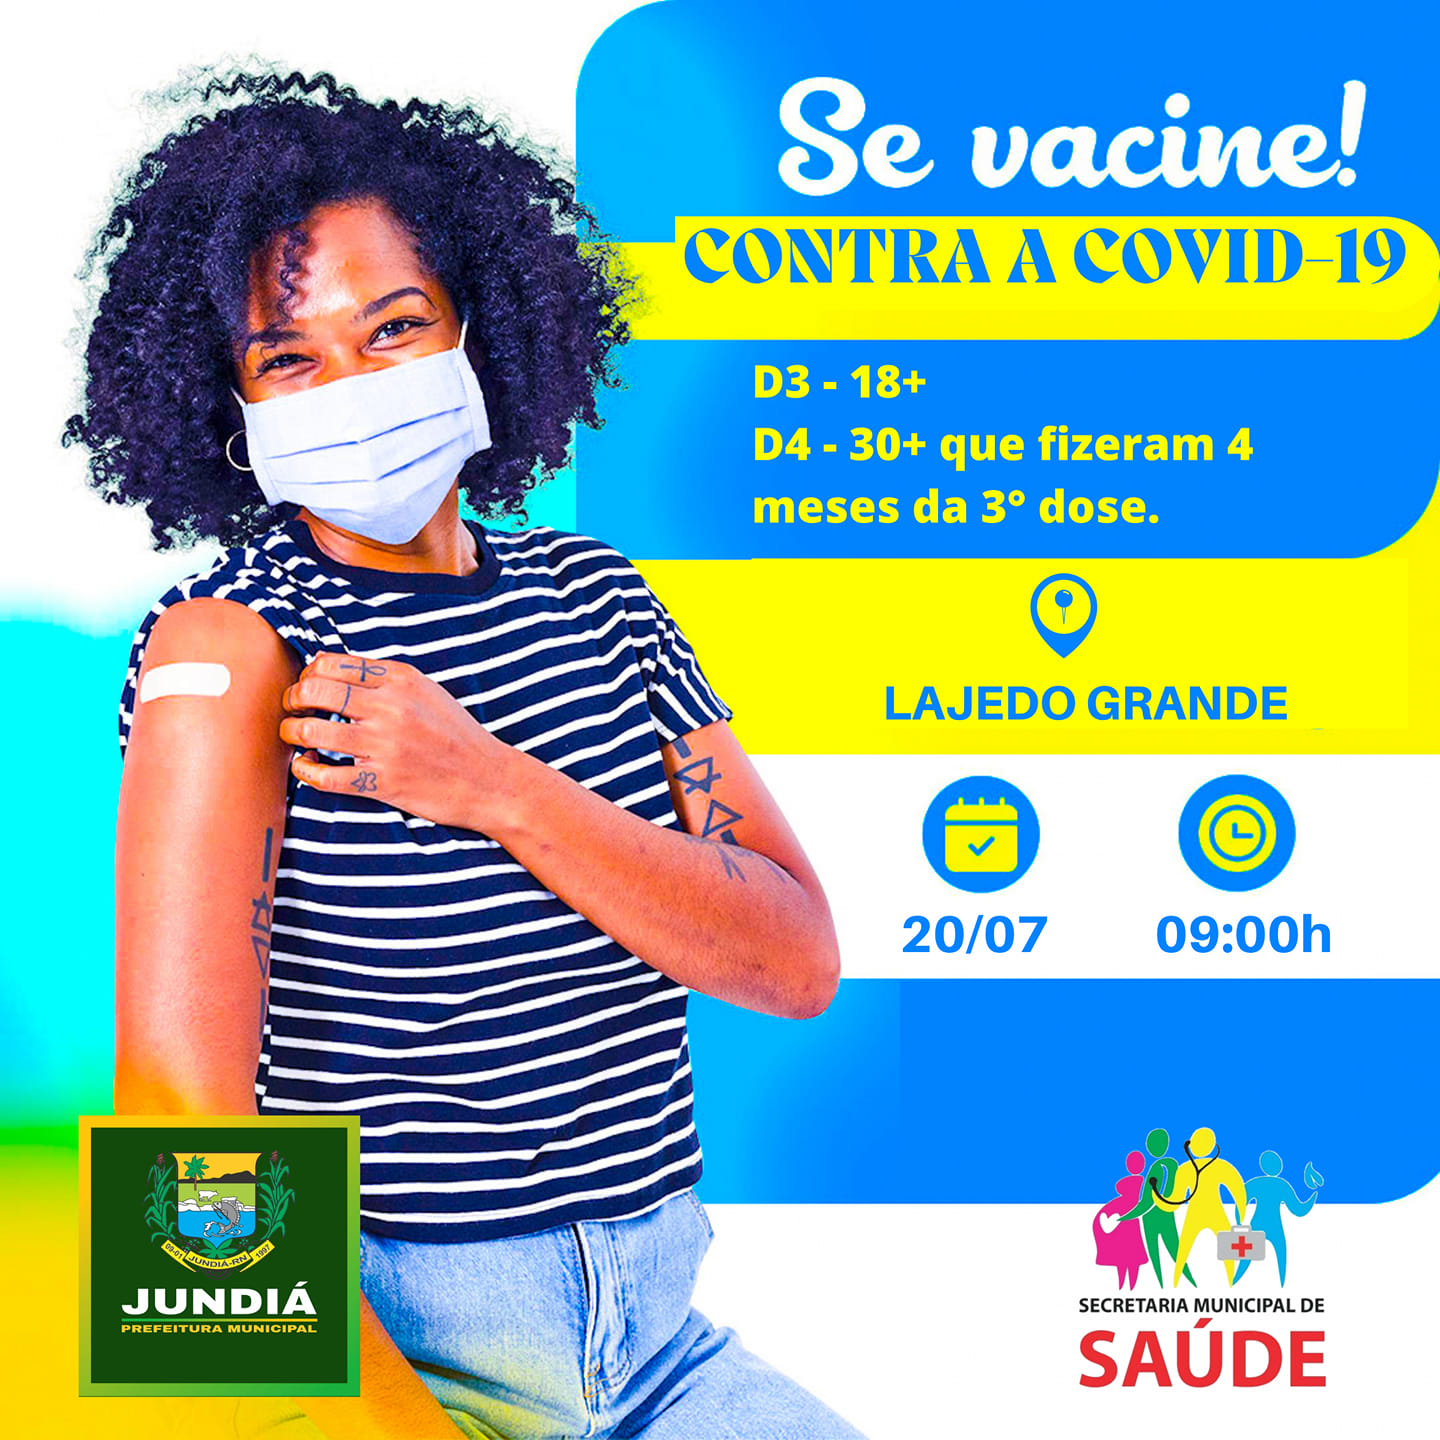 Chegou a hora do reforço da vacina contra a Covid-19, no distrito de Santa Fé